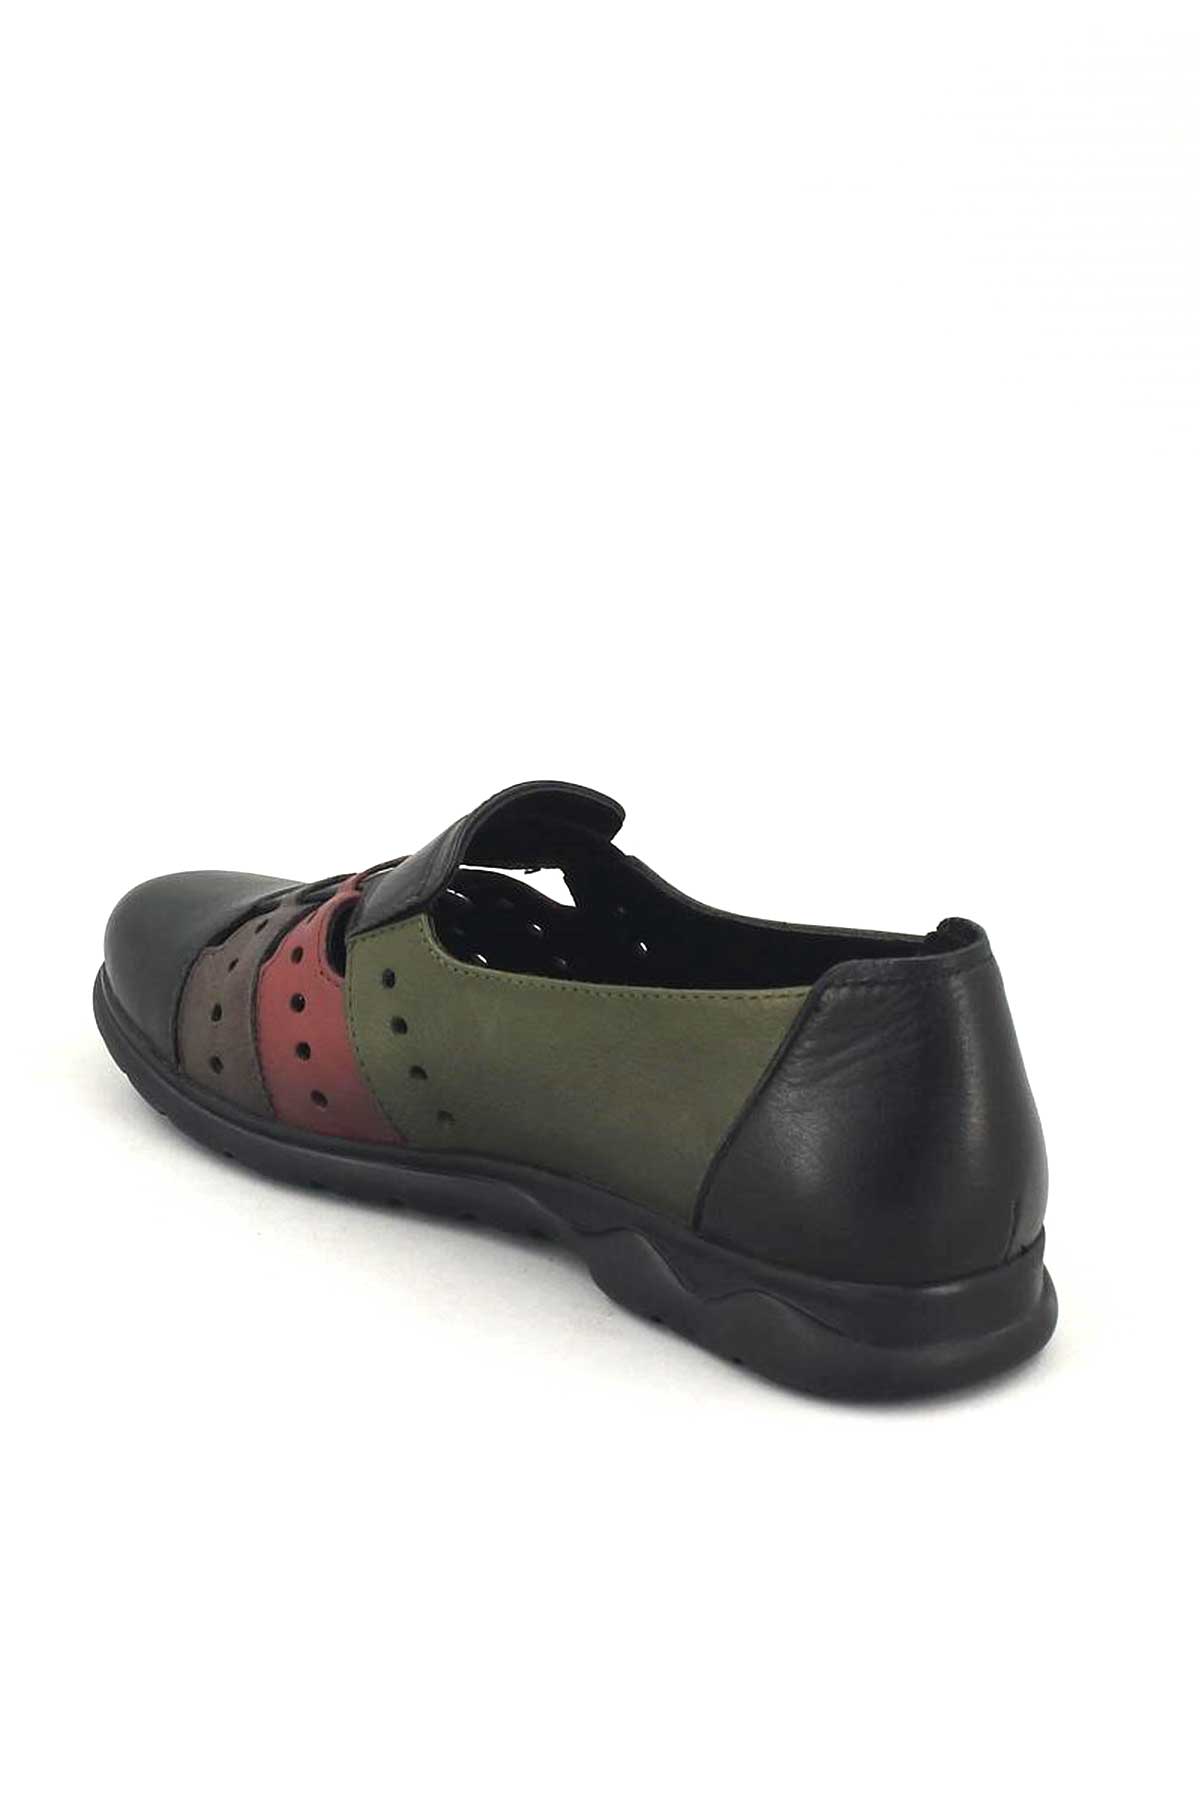 Kadın Yazlık Comfort Ayakkabı Siyah 1813672Y